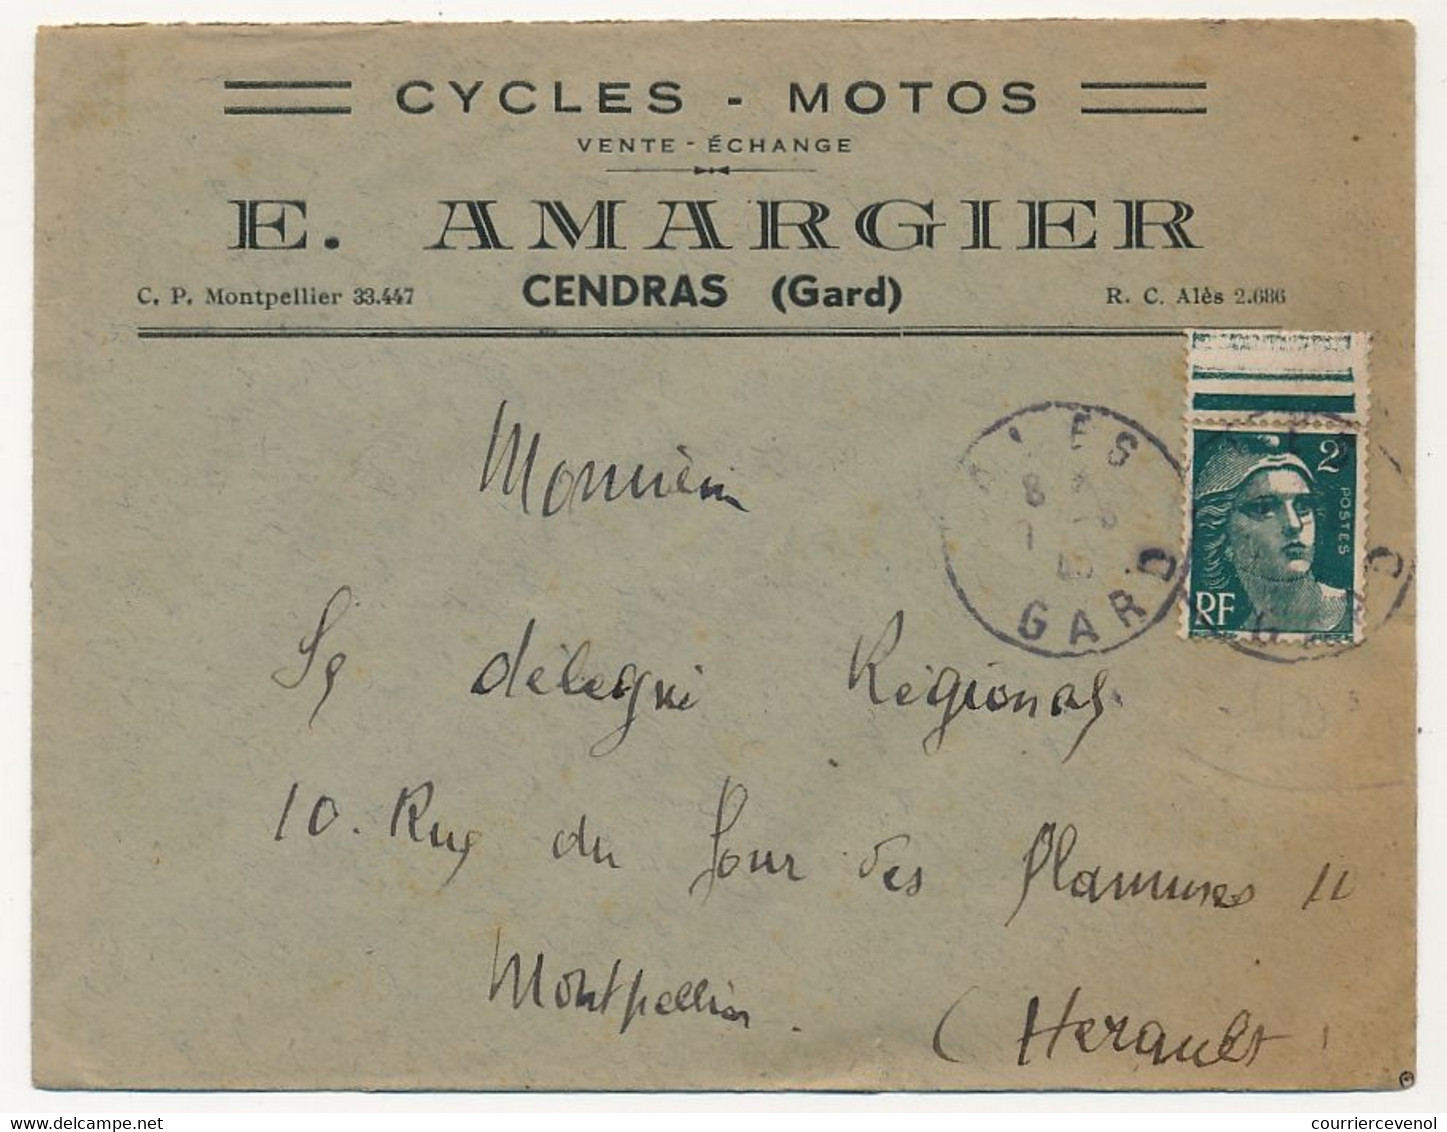 FRANCE - Env. En-tête "Cycles, Motos" E. ARMAGIER - Cendras (Gard) - Affr 2F Gandon 1945 - Sport En Toerisme